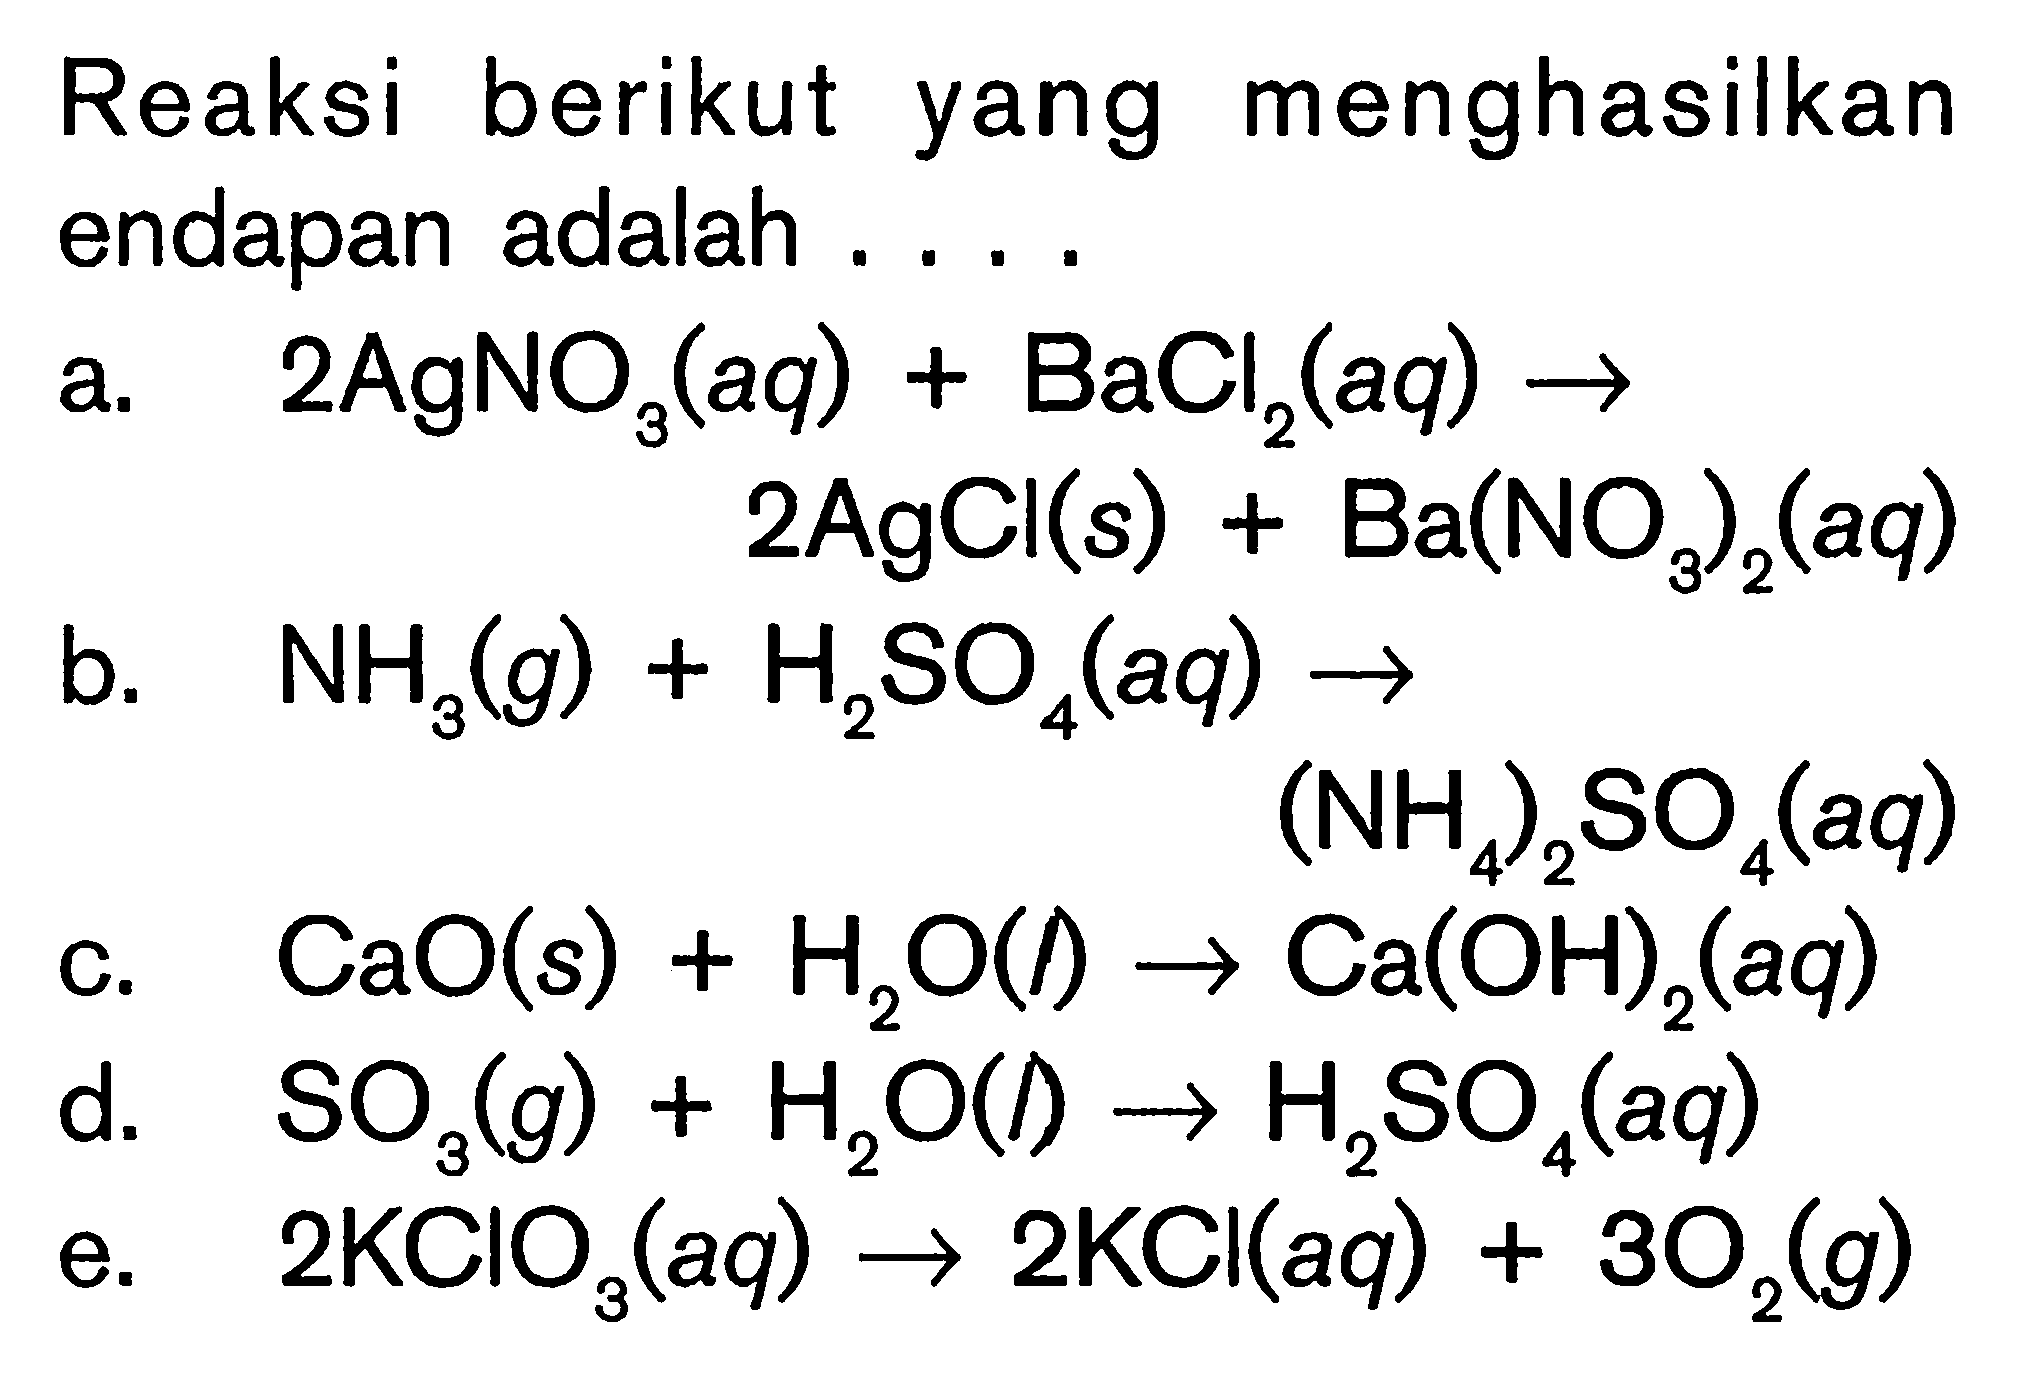 Reaksi berikut yang menghasilkan endapan adalah ....a.  2AgNO3(aq)+BaCl2(aq) -> 2AgCl(s)+Ba(NO3)2(aq) b.  NH3(g)+H2SO4(aq) -> (NH4)2 SO4(aq) c. CaO(s)+H2O(l) -> Ca(OH)2(aq) d.  SO3(g)+H2O(l) -> H2 SO4(aq) e.  2 KClO3(aq) -> 2 KCl(aq)+3O2(g) 